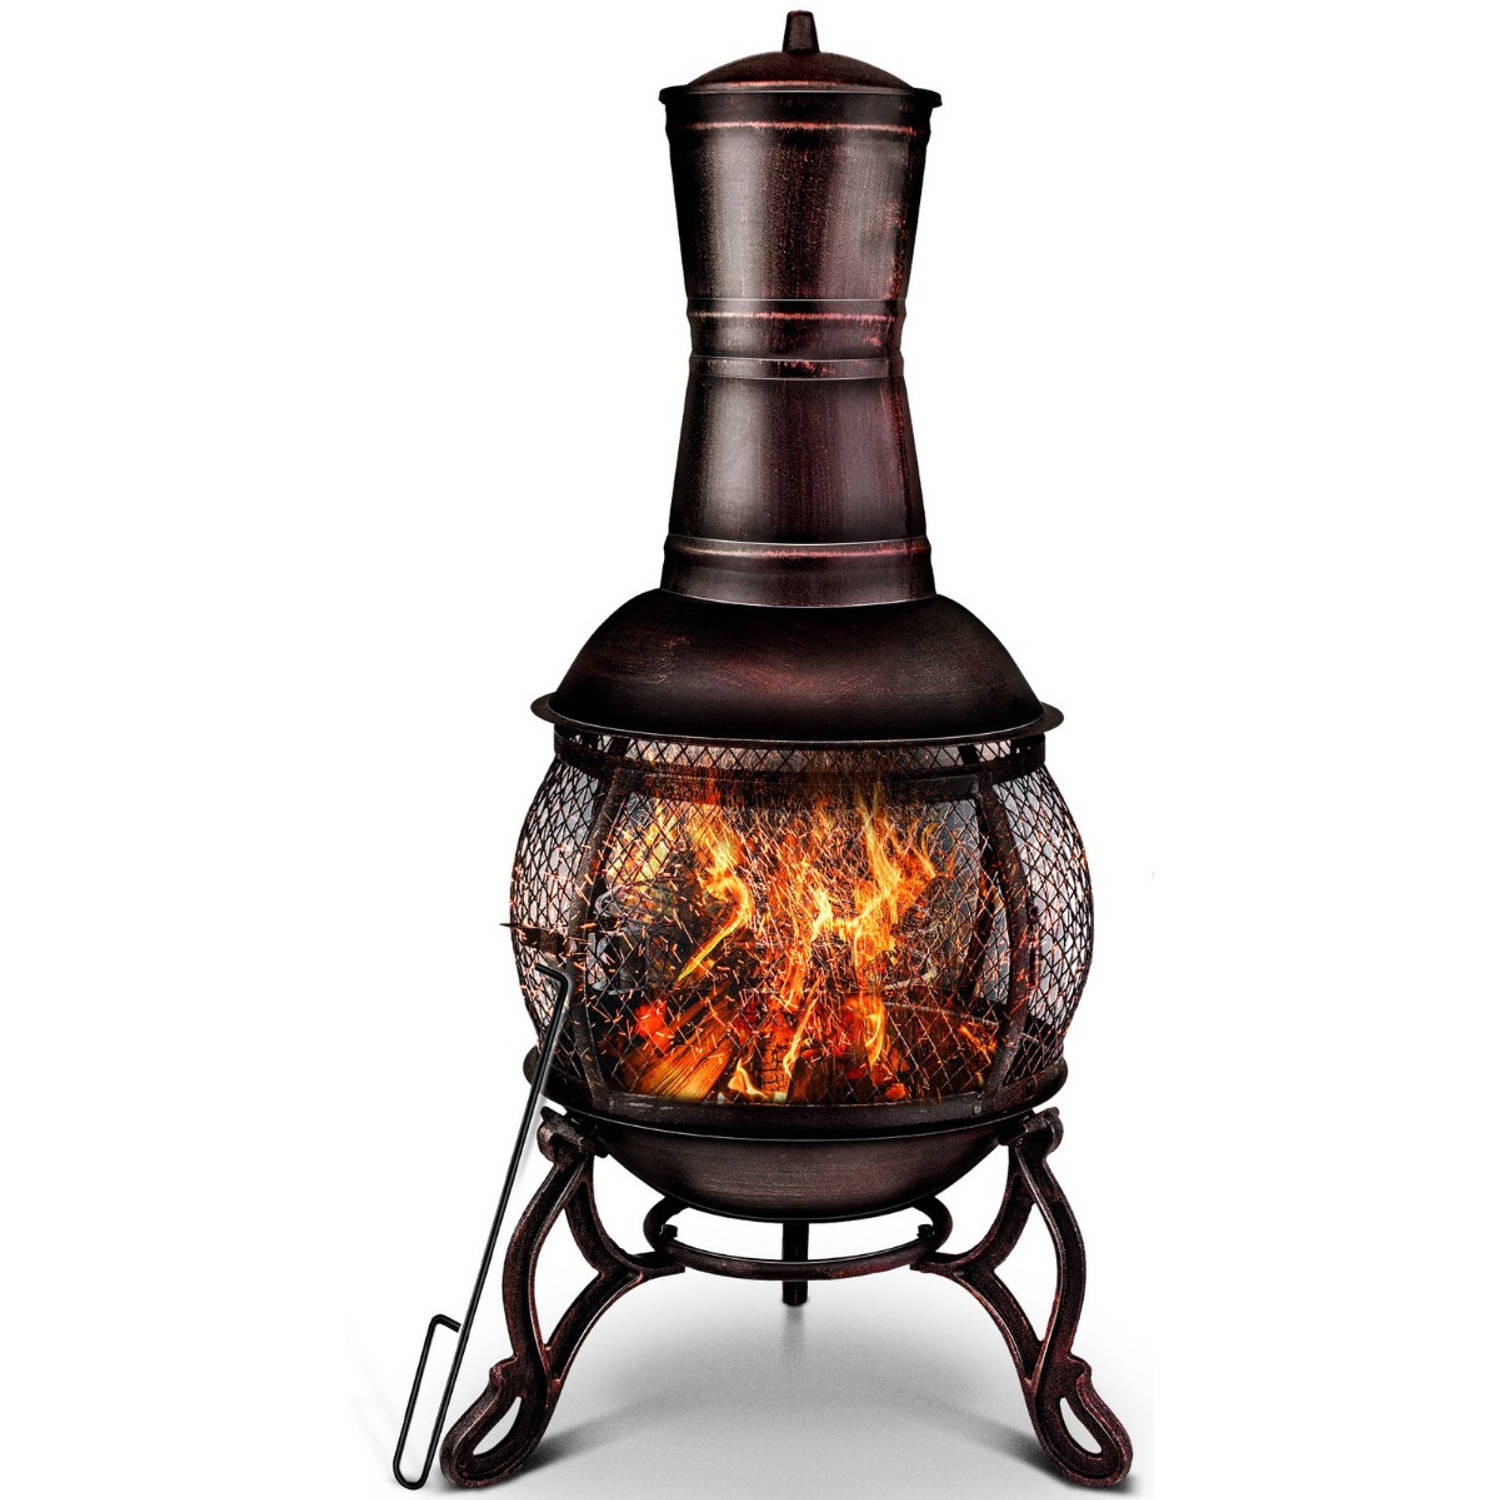 Tillvex- Terrasoven met grill, Rood-Brons, 89 cm, Azteekse oven, tuinhaard